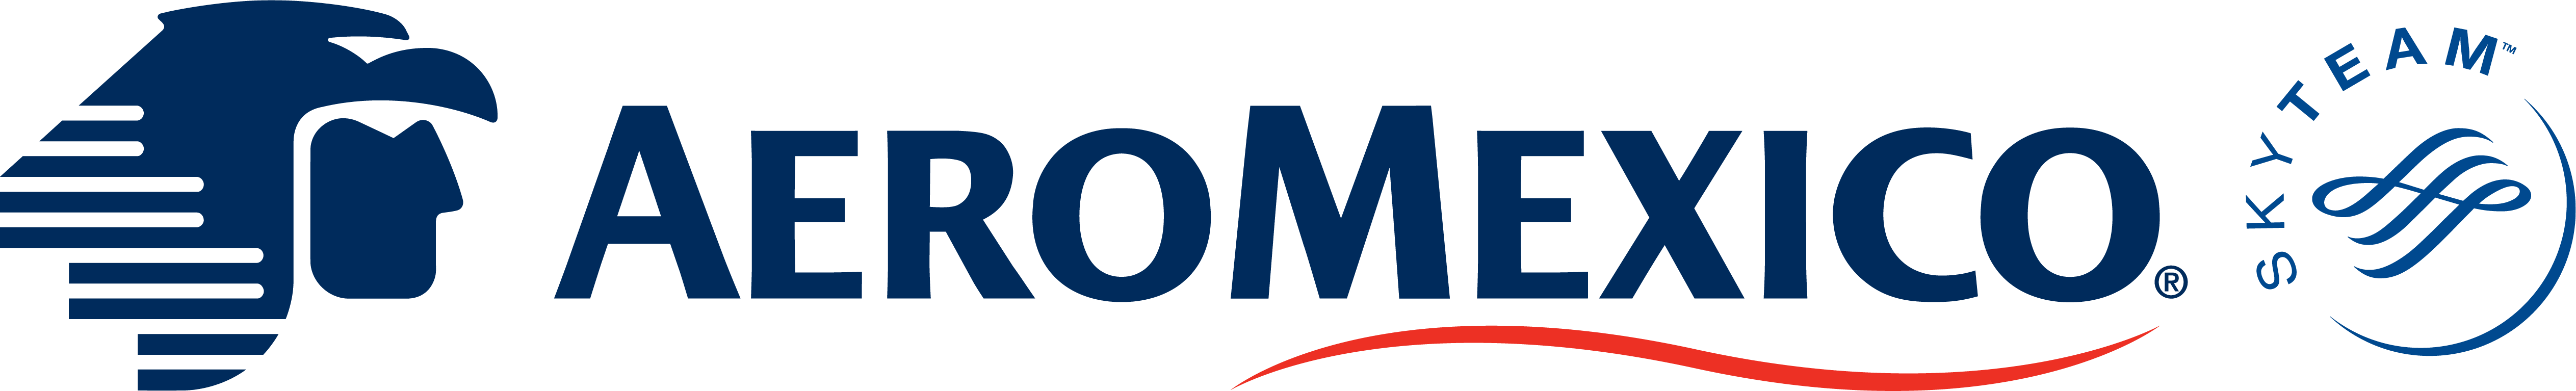 Aeromexico Logo - Aeromexico Announces its New Flight to Calgary, Canada from Mexico